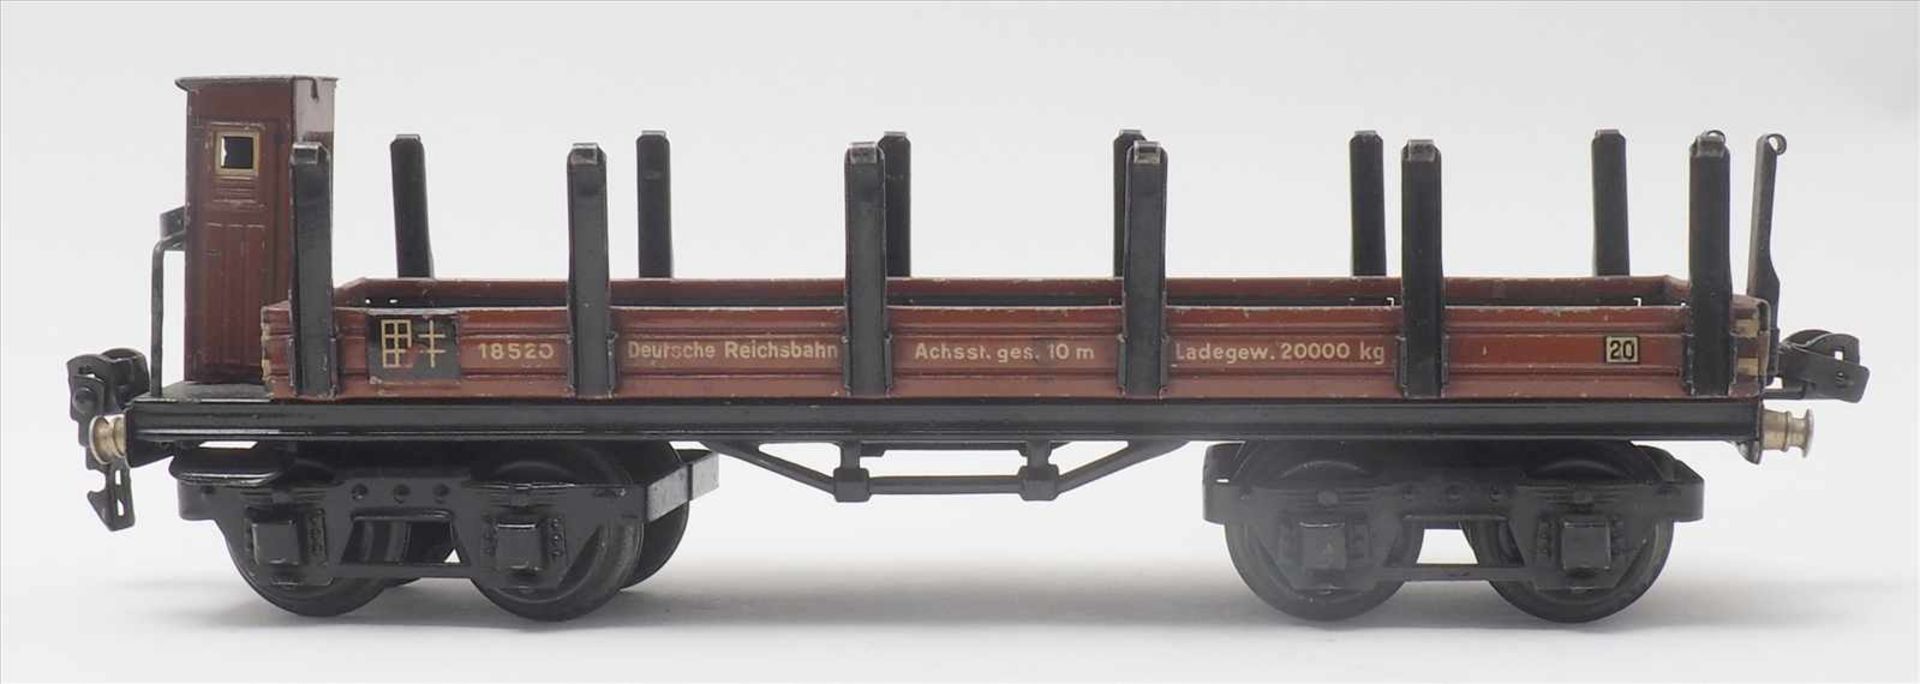 Zwei GüterwagenMärklin Spur 0. 1930-er Jahre. Hochbordwagen und Rungenwagen mit Bremserhaus. - Bild 3 aus 8